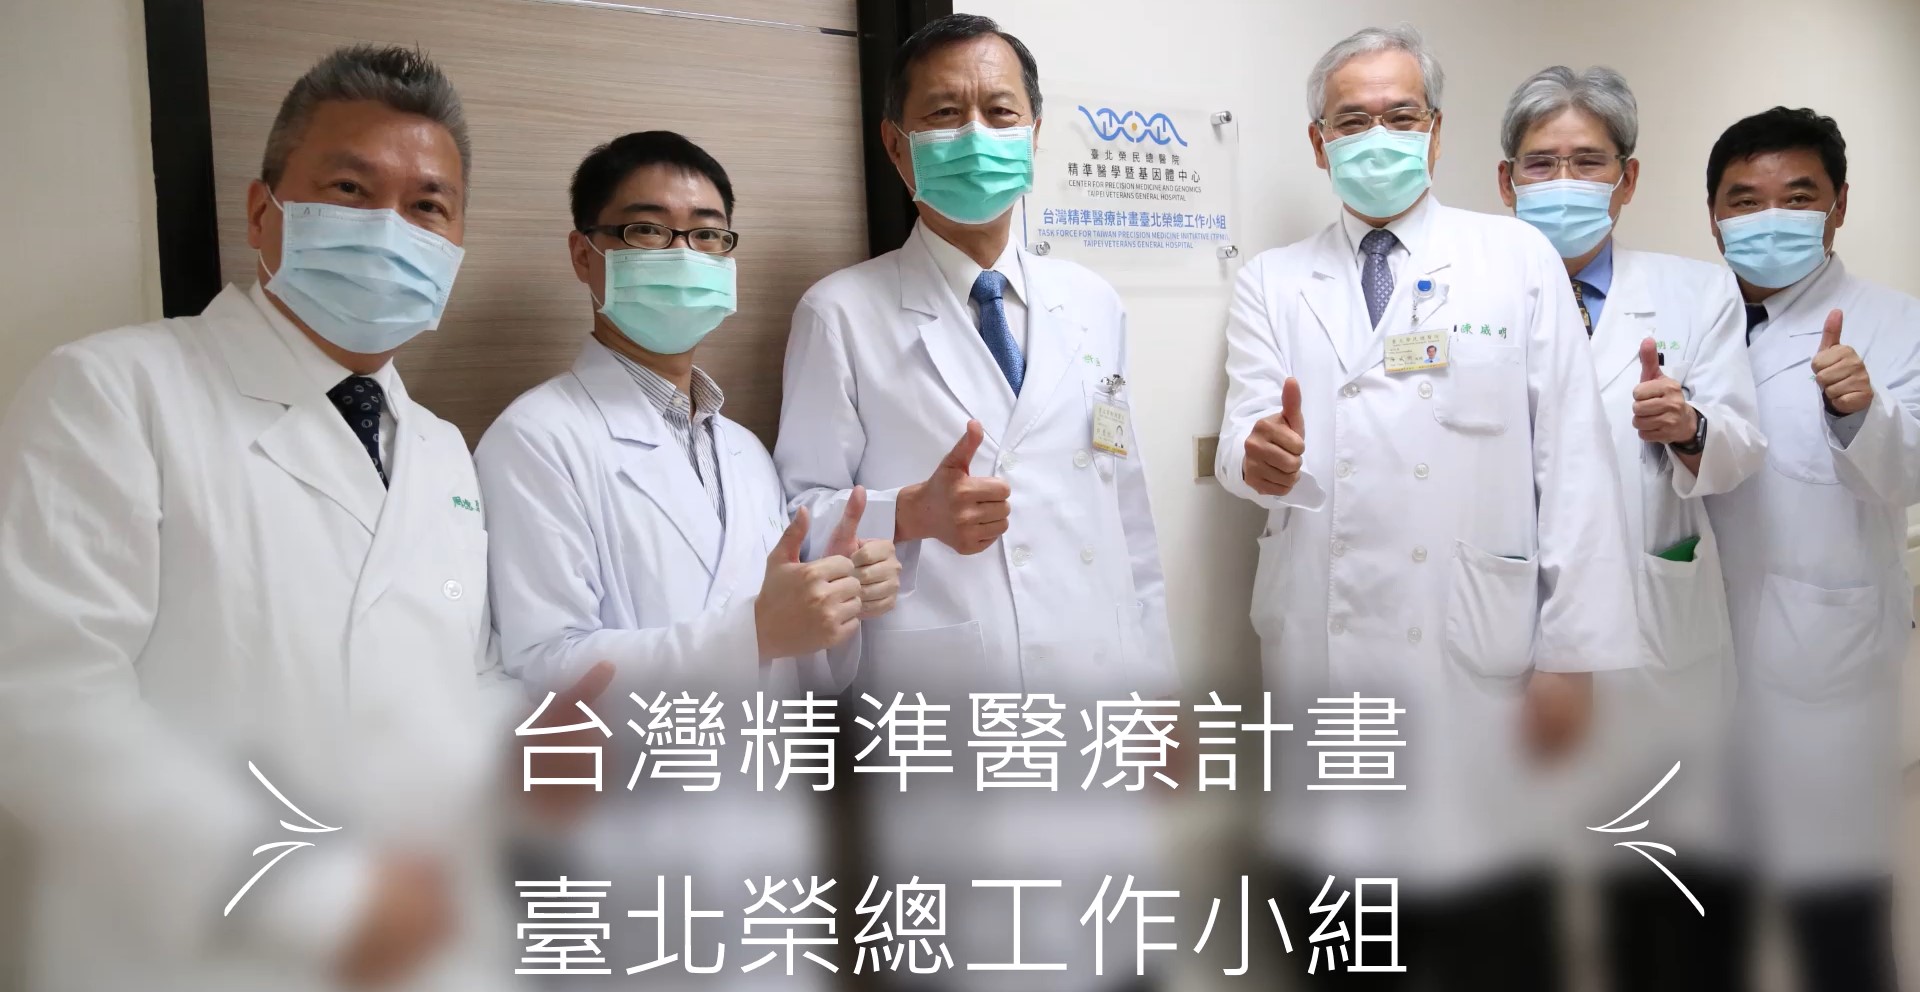 台灣精準醫療計畫
臺北榮總工作小組��